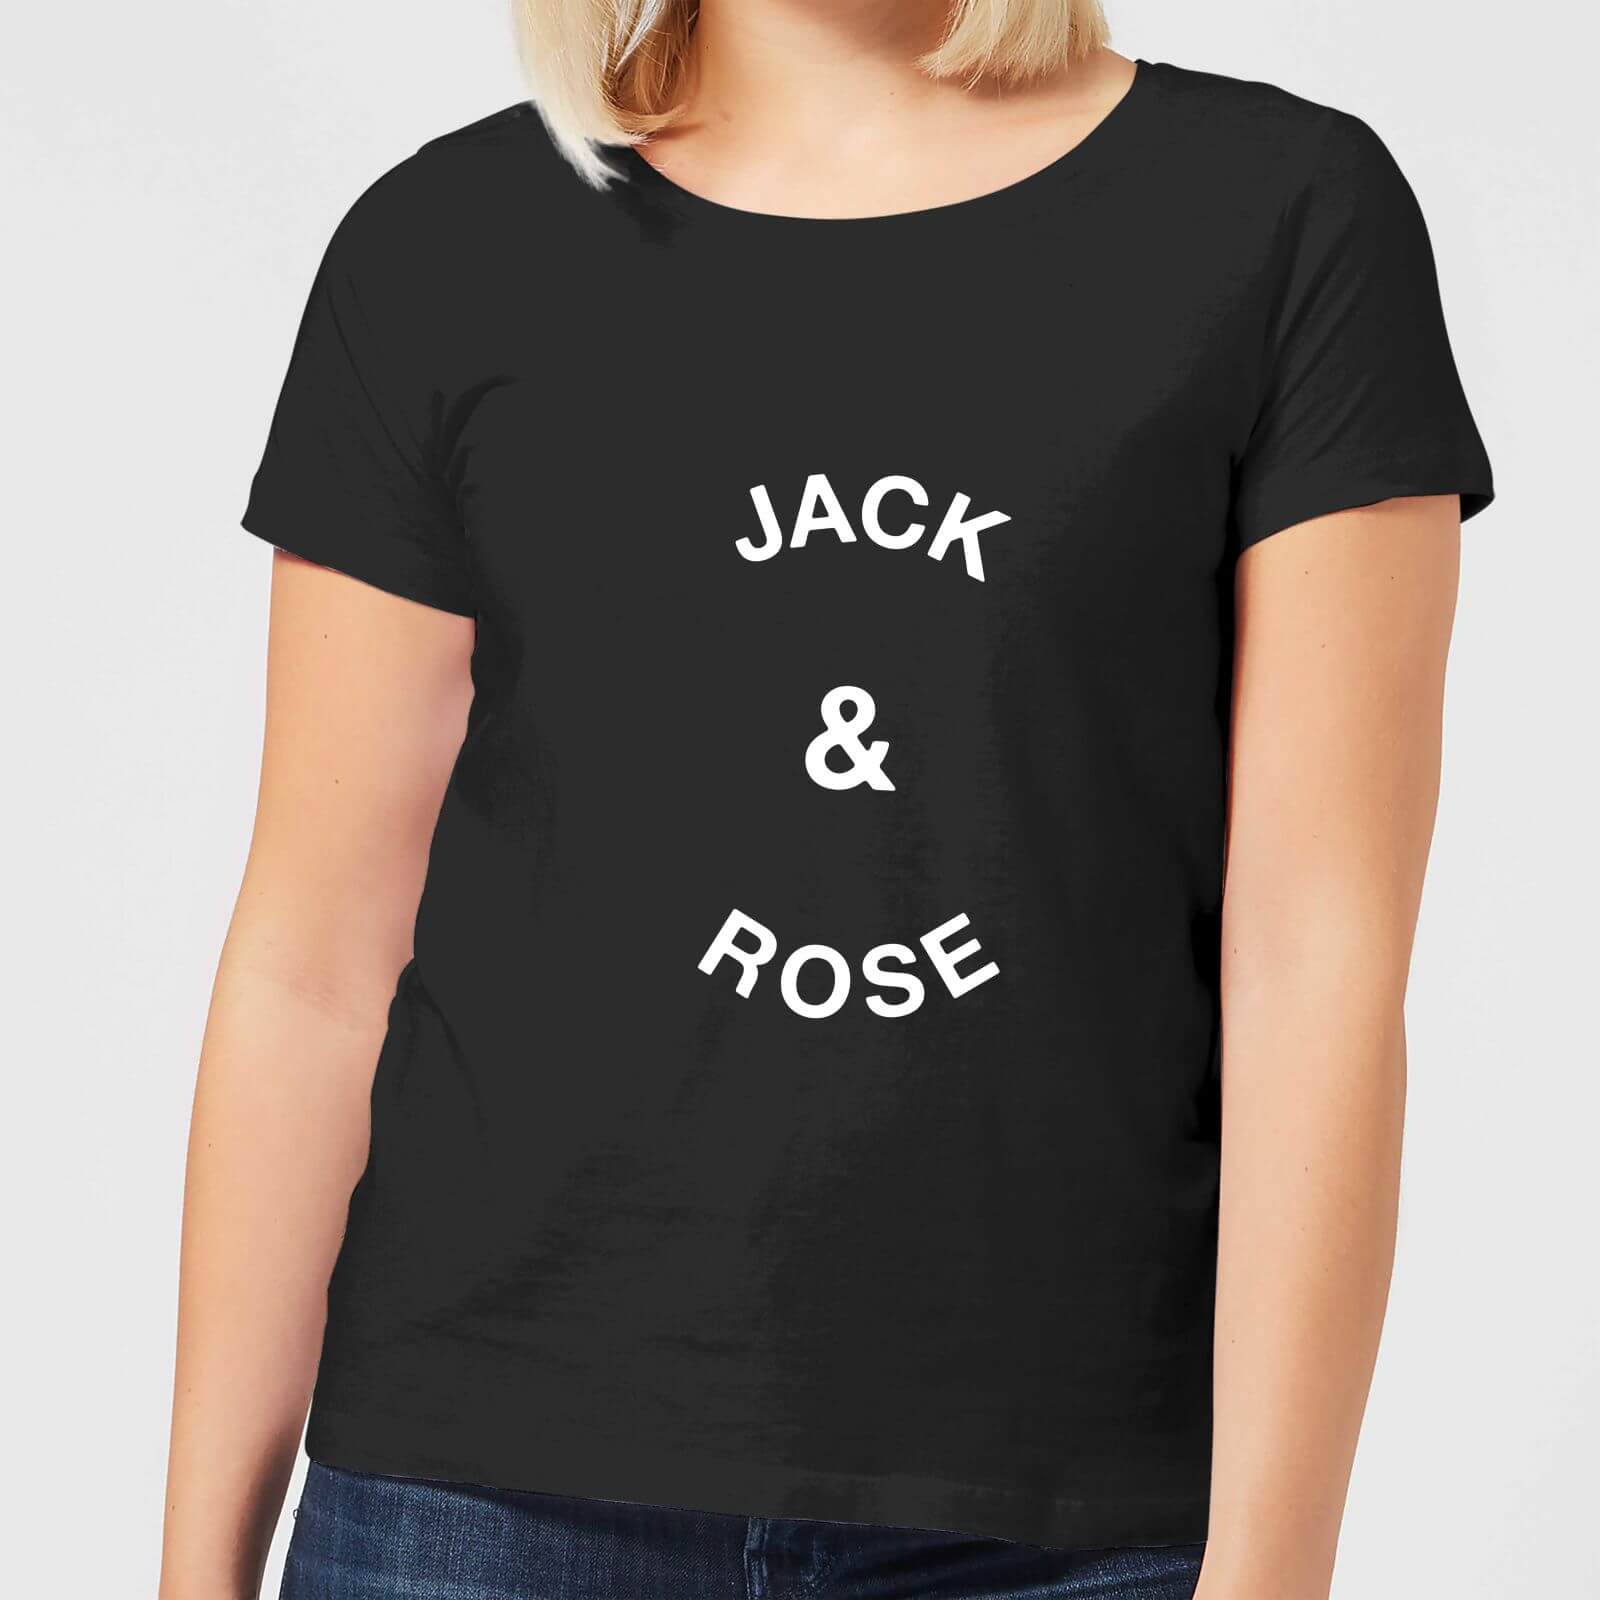 Jack & Rose Women's T-Shirt - Black - S - Black